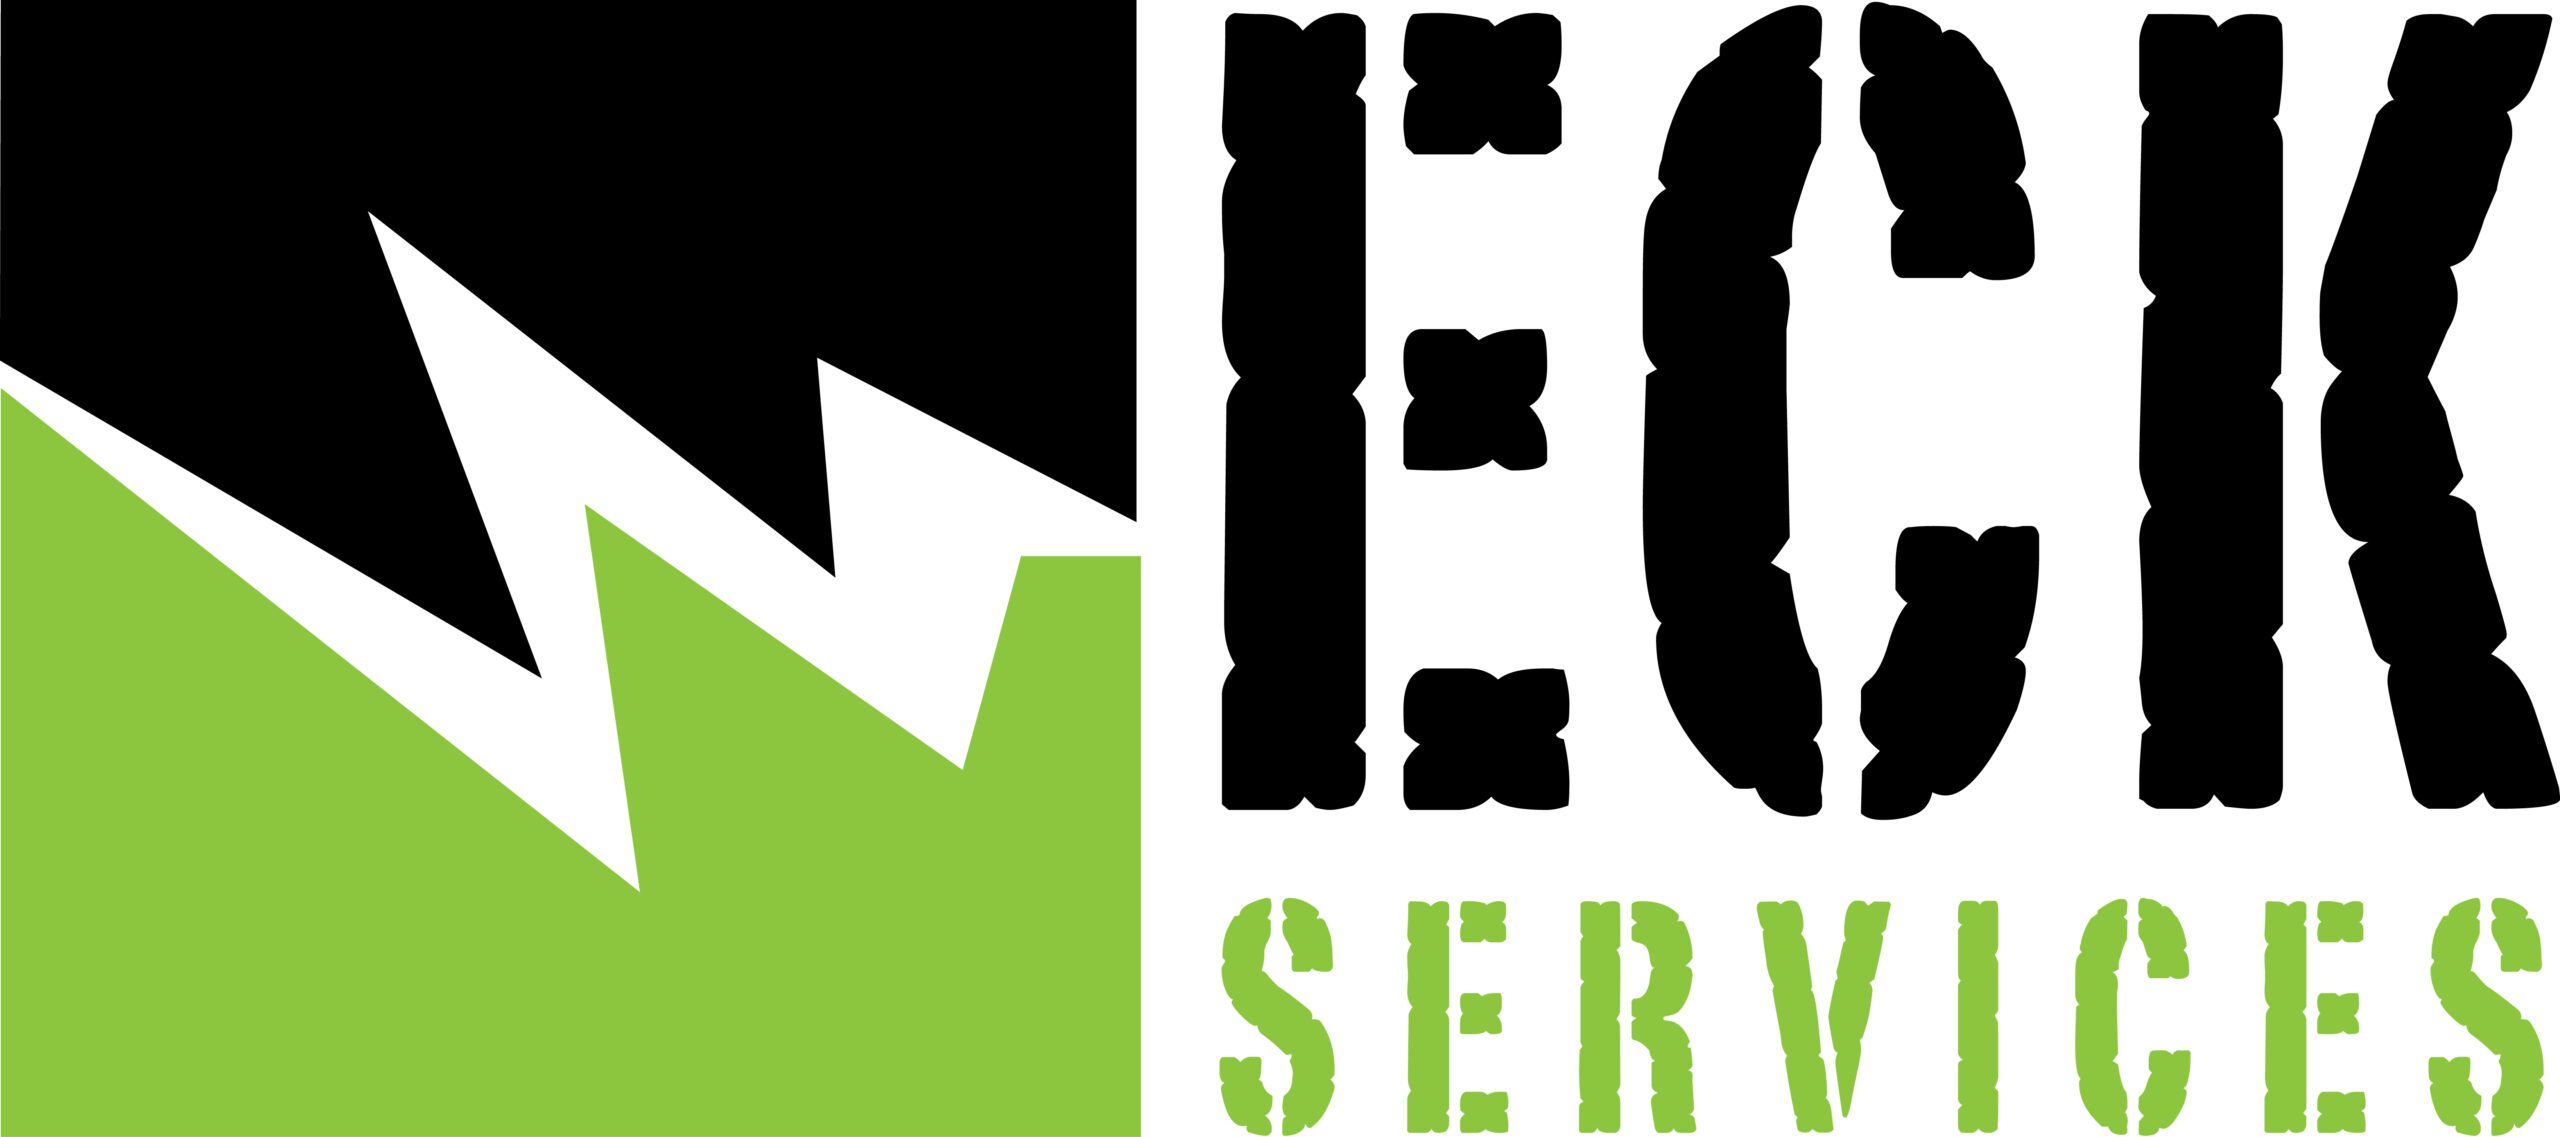 Eck Services logo